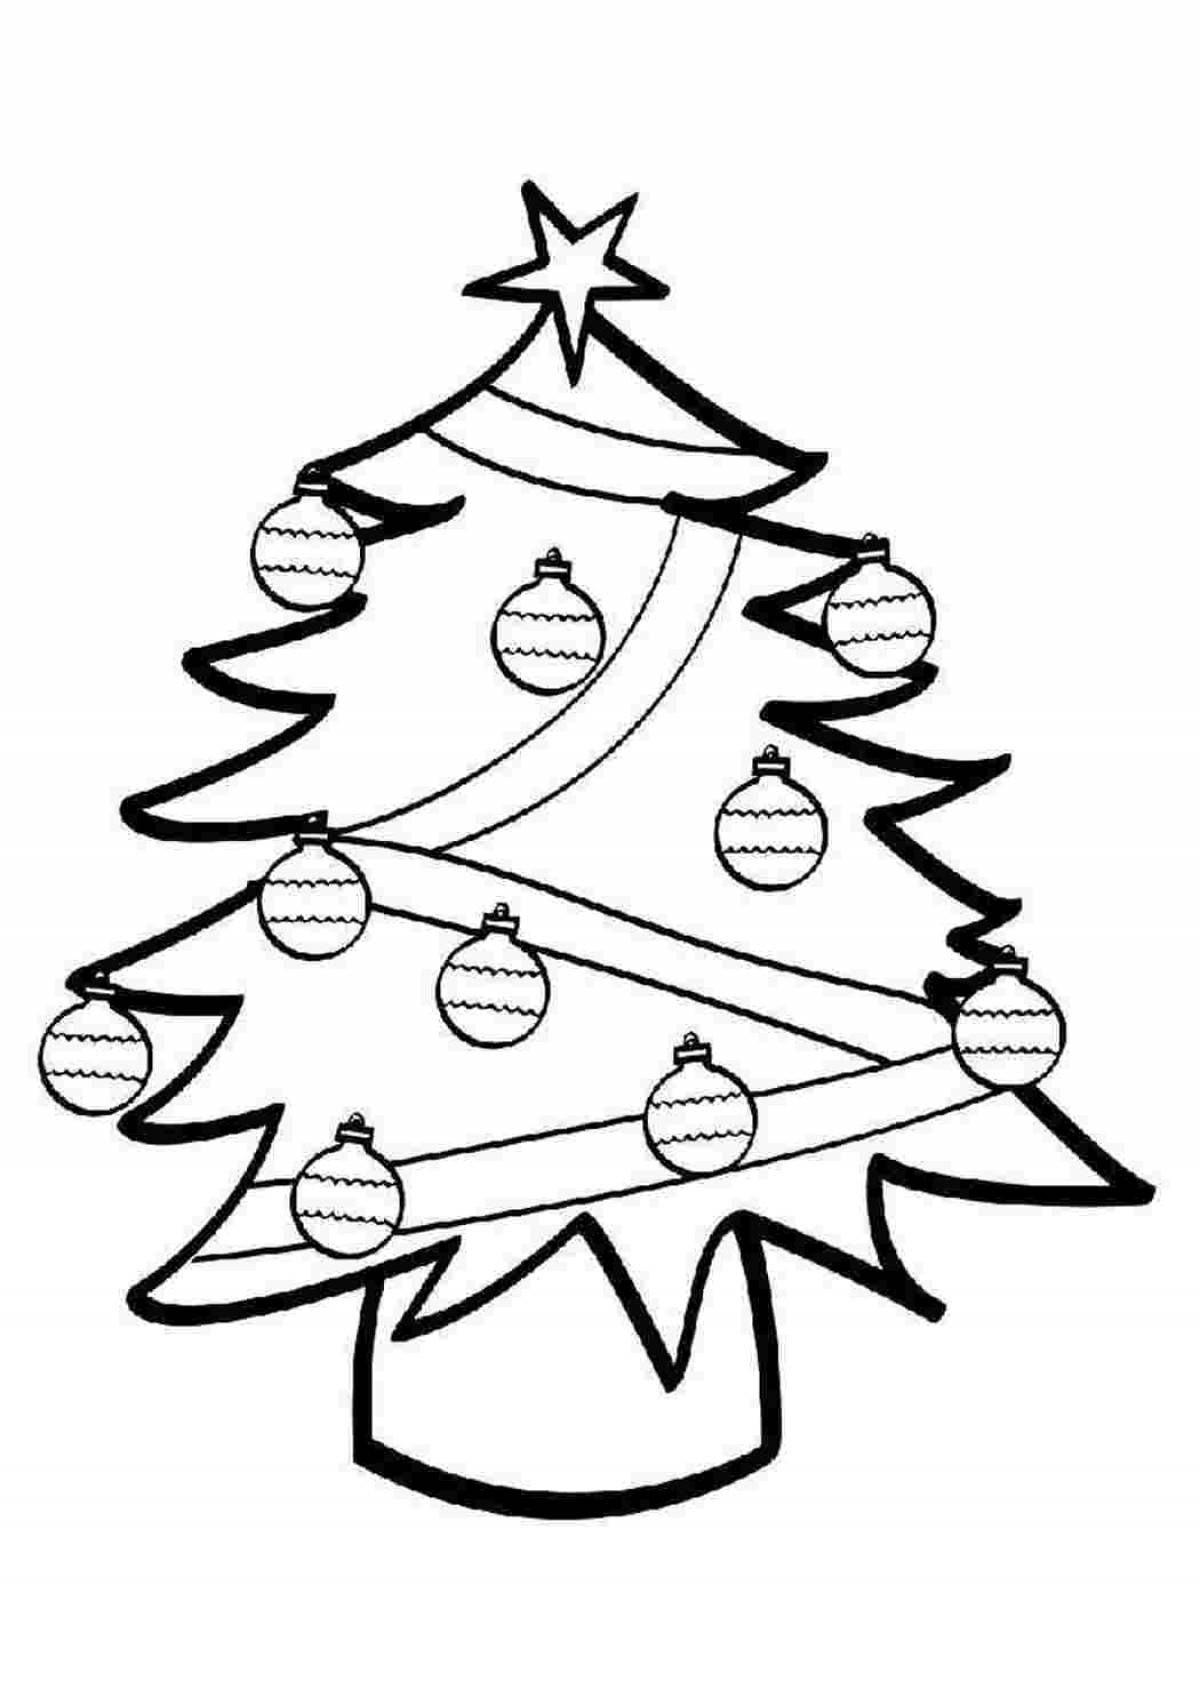 Elegant Christmas tree with balls for children